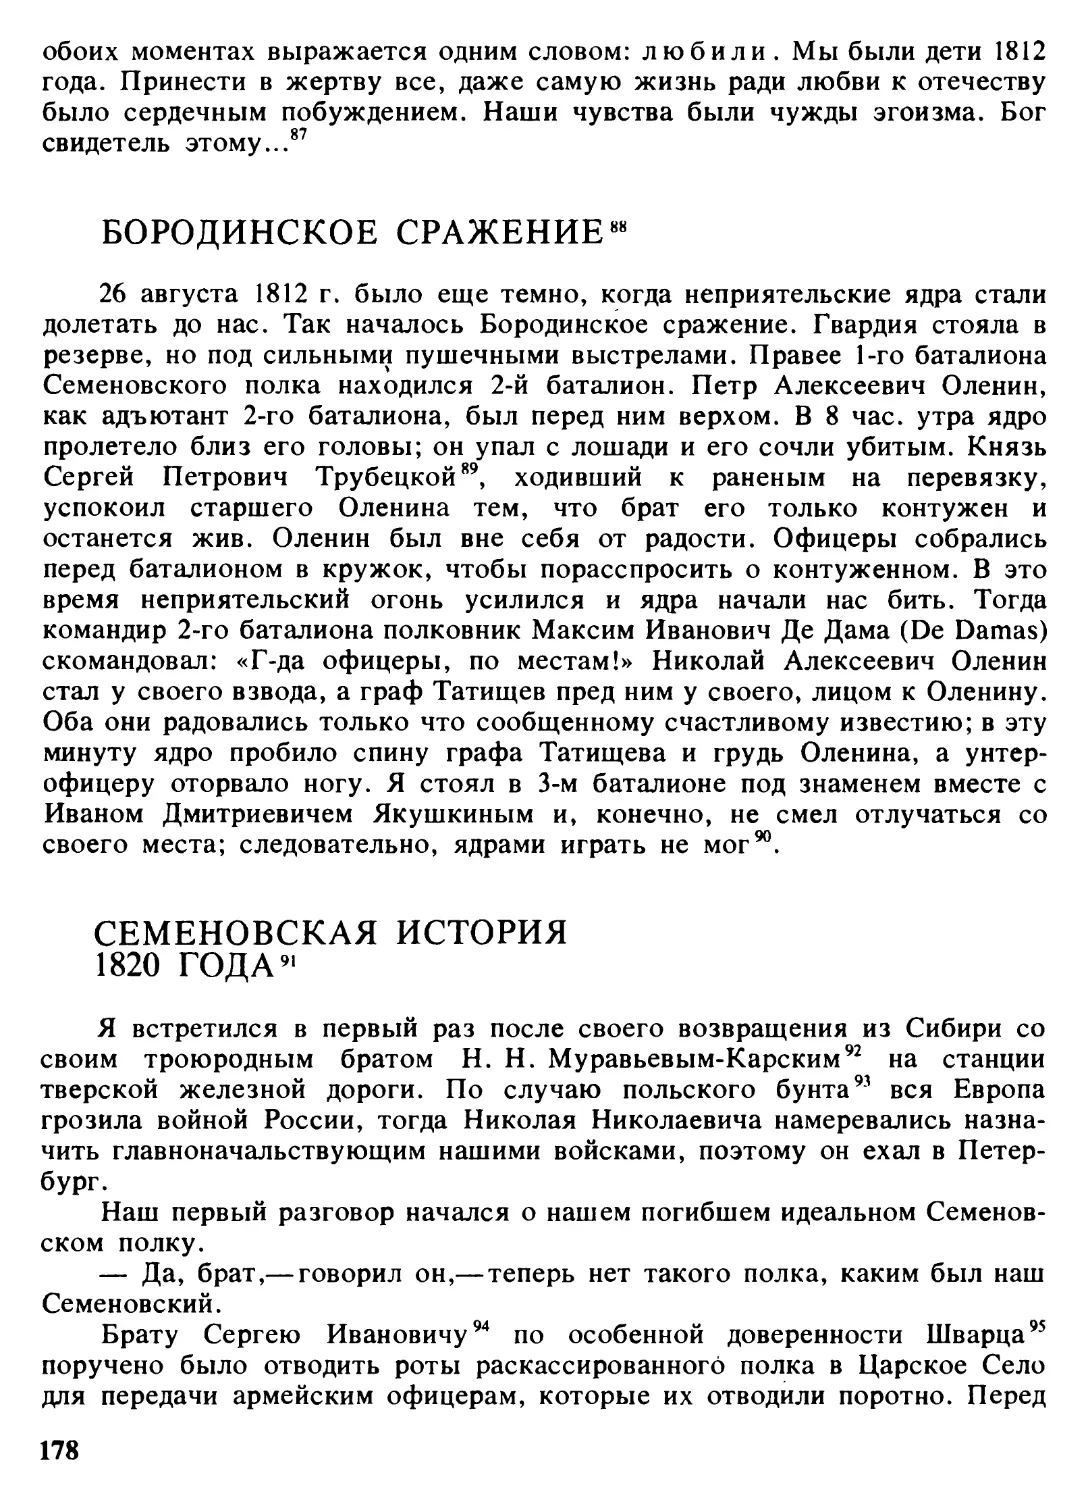 Бородинское сражение
Семеновская история 1820 года